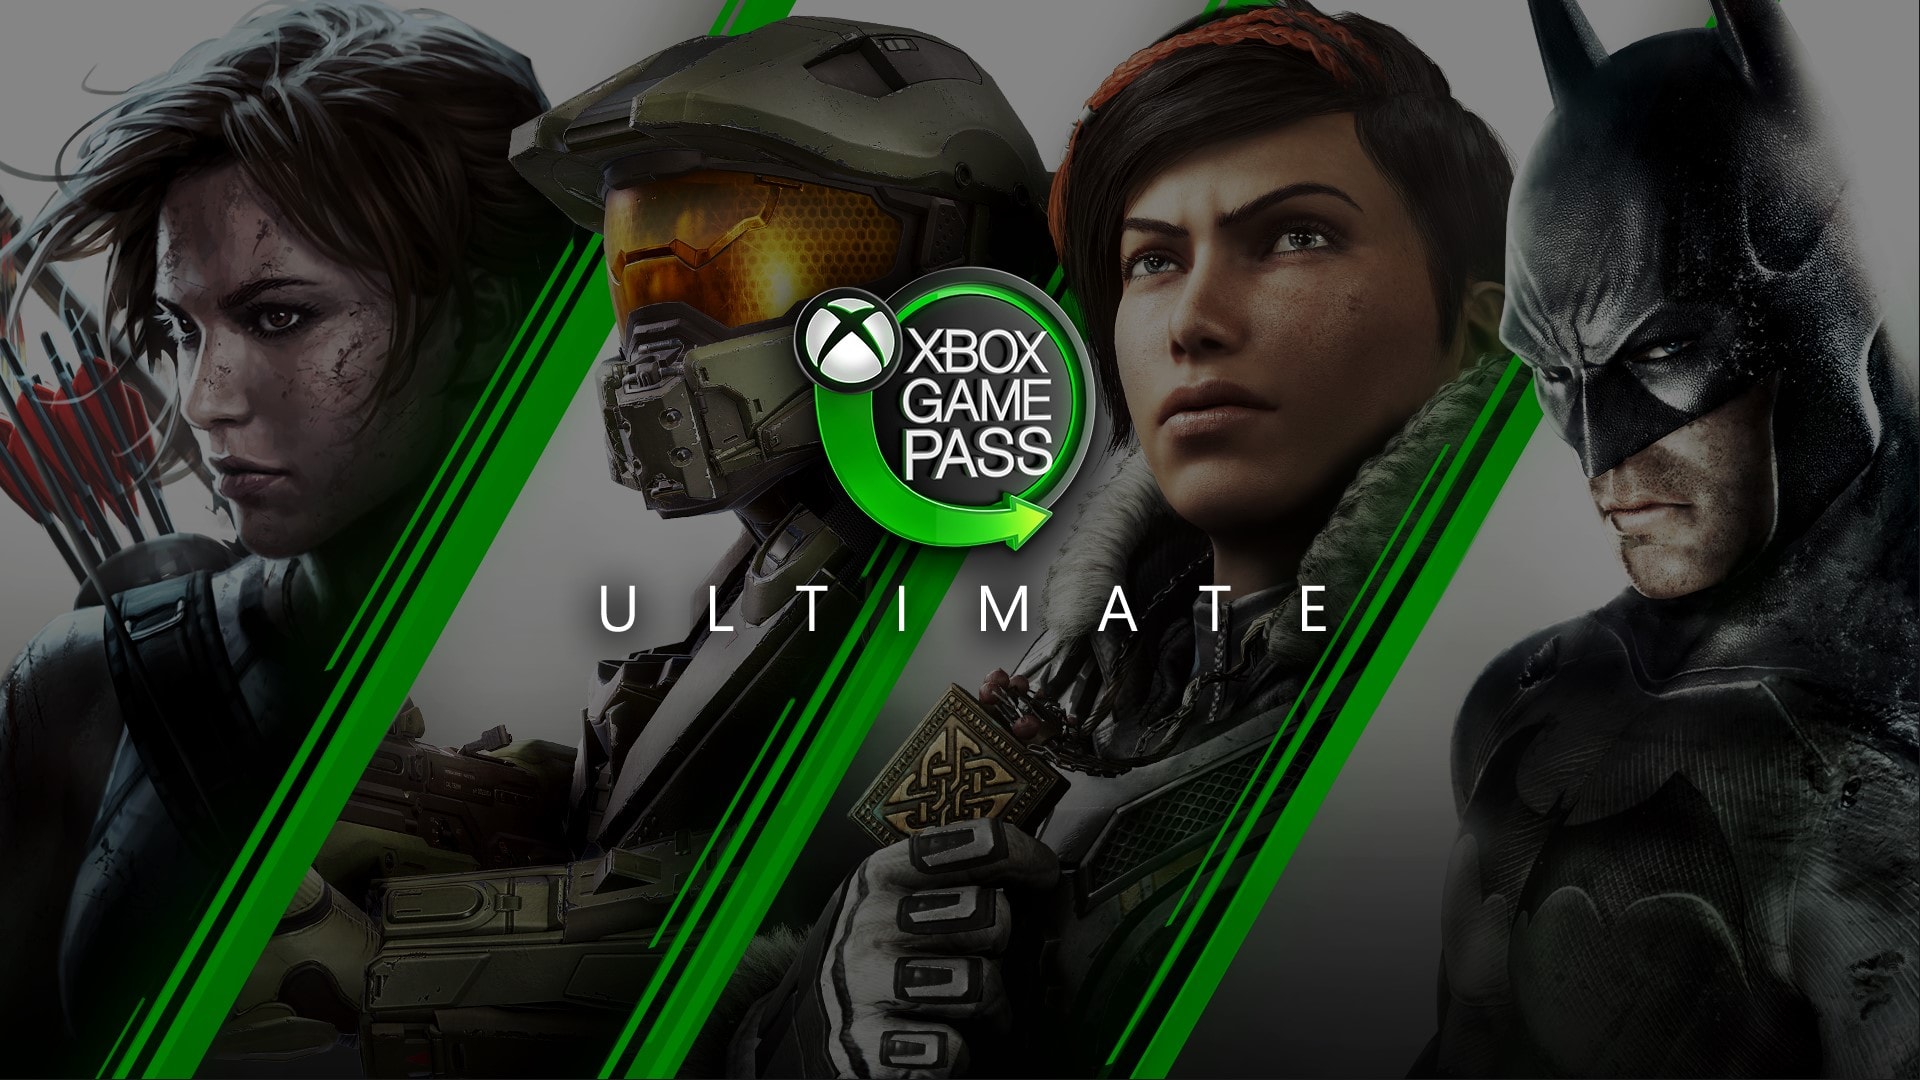 E3 2019 - Xbox Game Pass Ultimate, la suscripción conjunta de Microsoft, ya disponible | E3 2019 - Todos los juegos y conferencias de la feria - HobbyConsolas Juegos